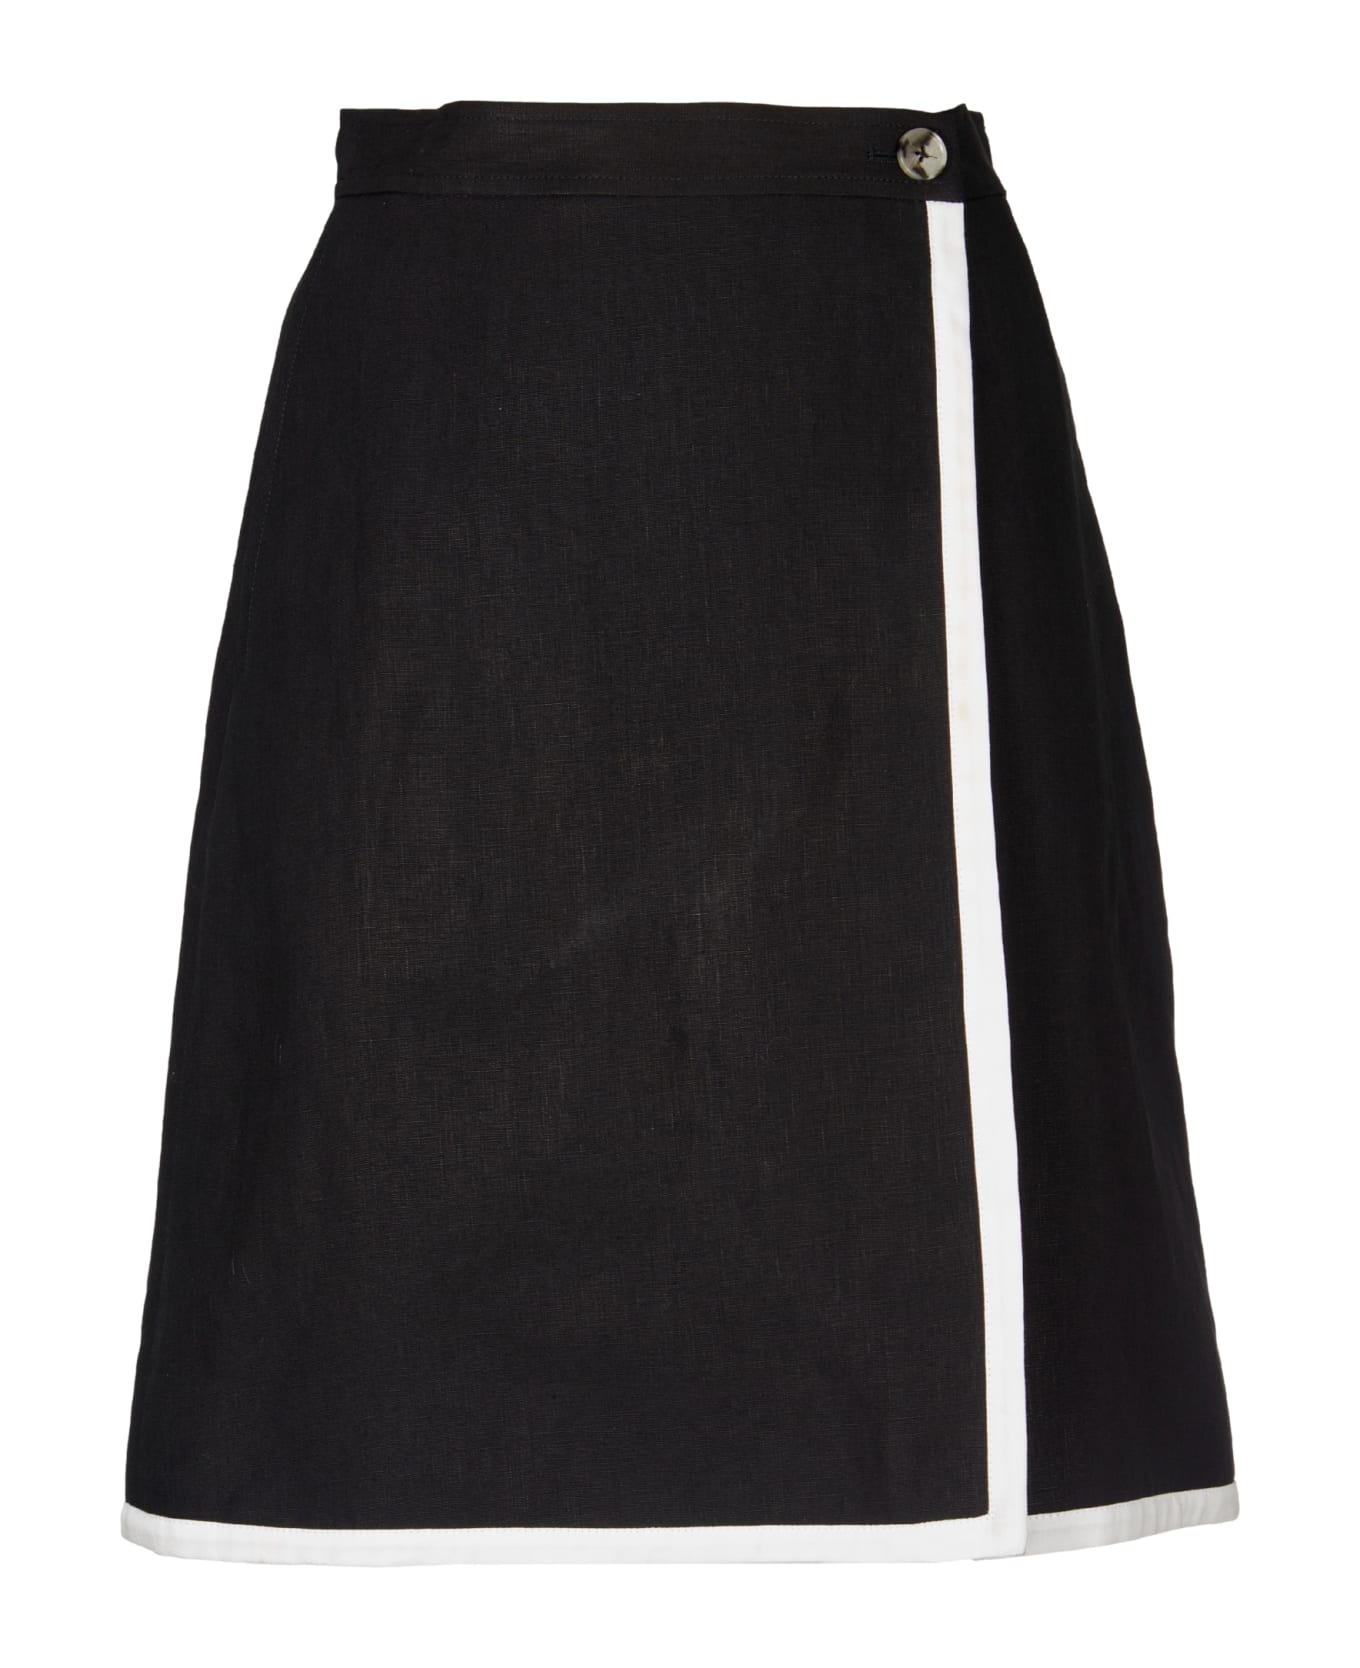 Paul Smith Skirt - Black スカート